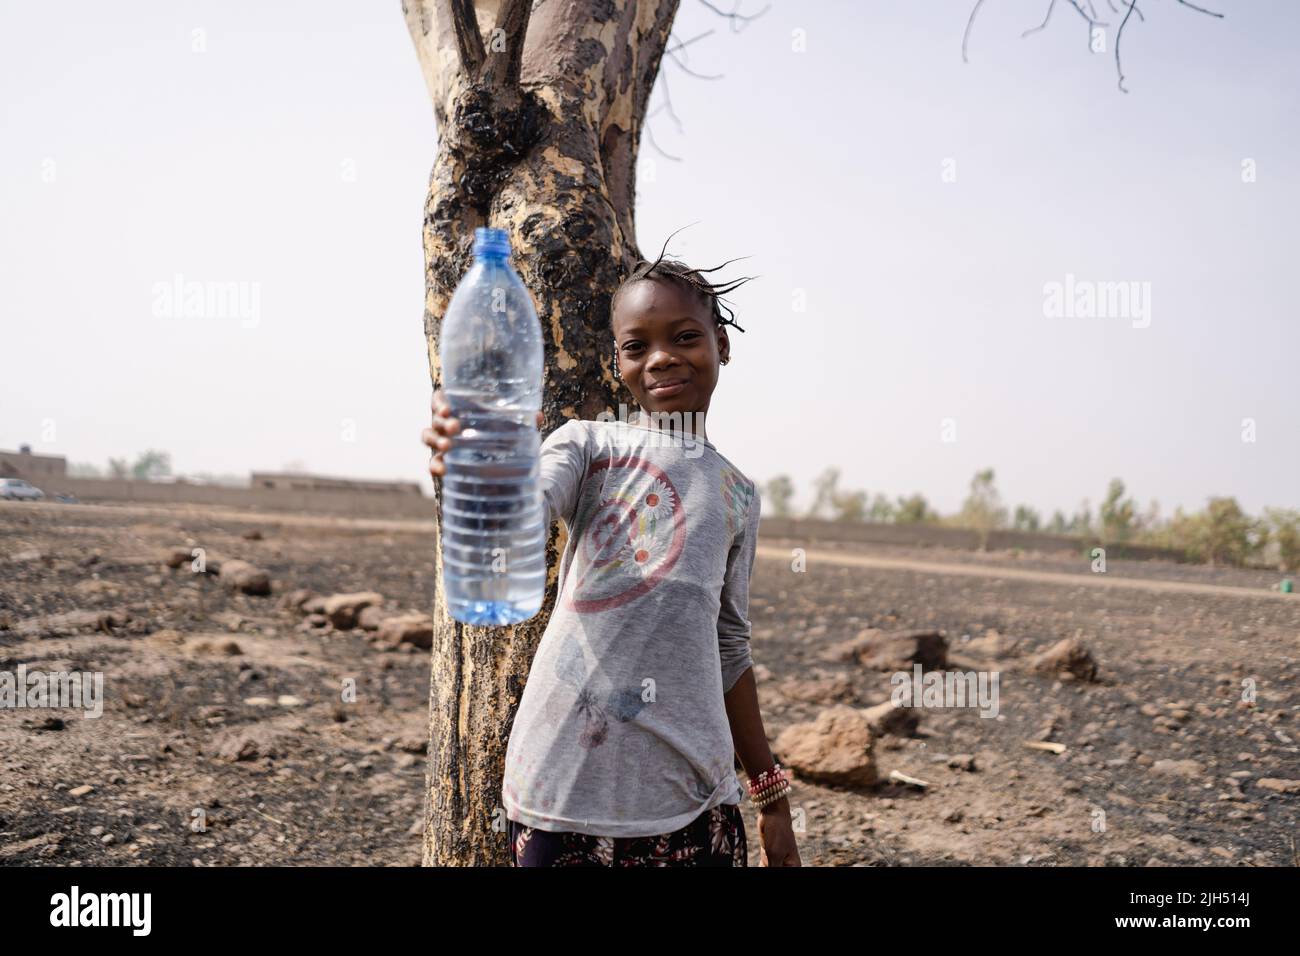 Schönes kleines afrikanisches Mädchen, das auf einem trockenen steinigen Feld steht und eine leere Plastikflasche hochhält, die den Wasserknappheit in der Region südlich der Sahara symbolisiert Stockfoto